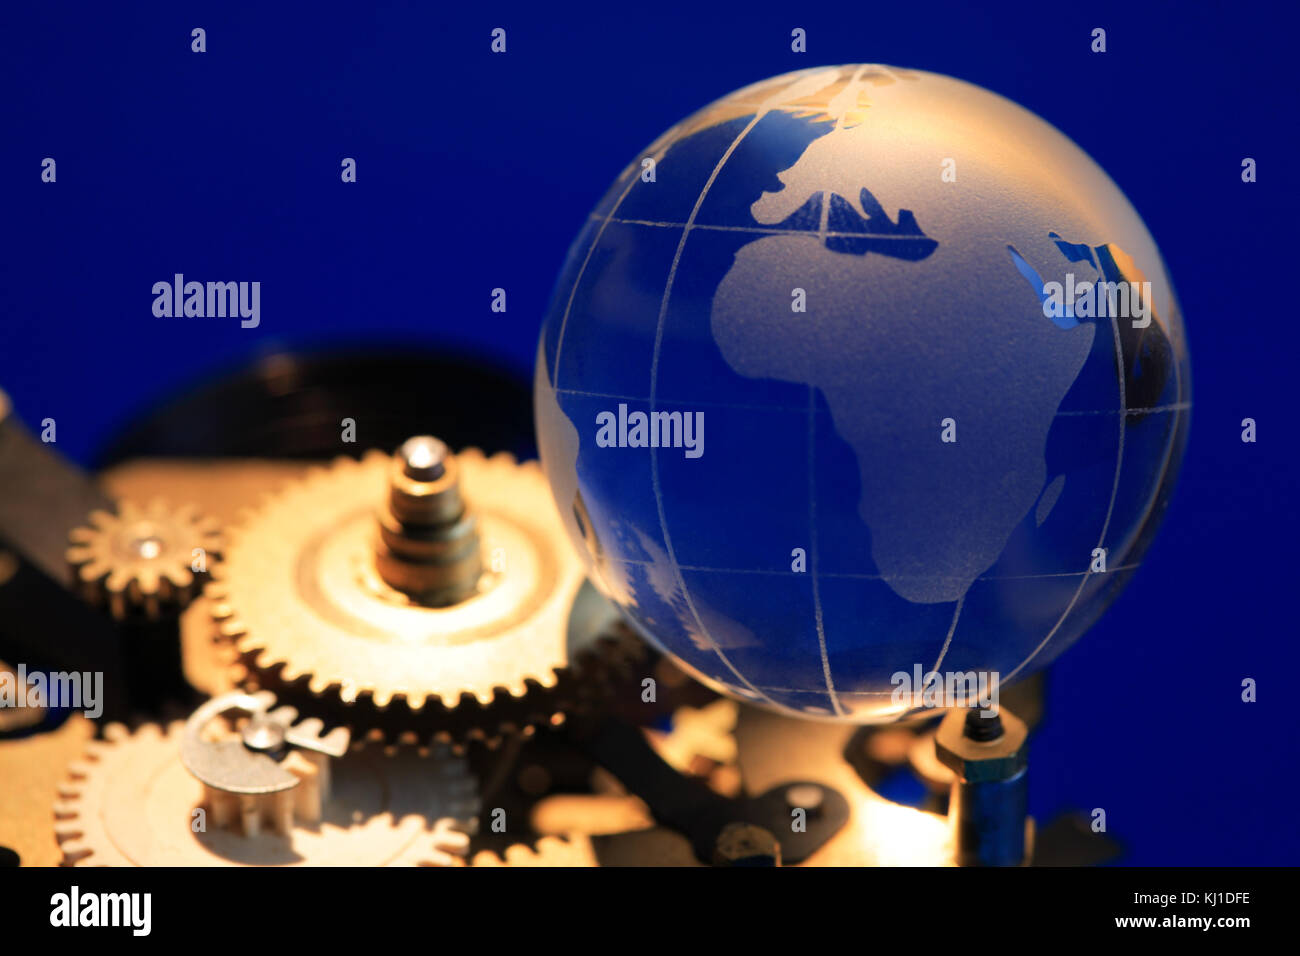 Globe en verre situé sur laiton mécanisme d'horloge avec des engrenages sur fond bleu foncé Banque D'Images